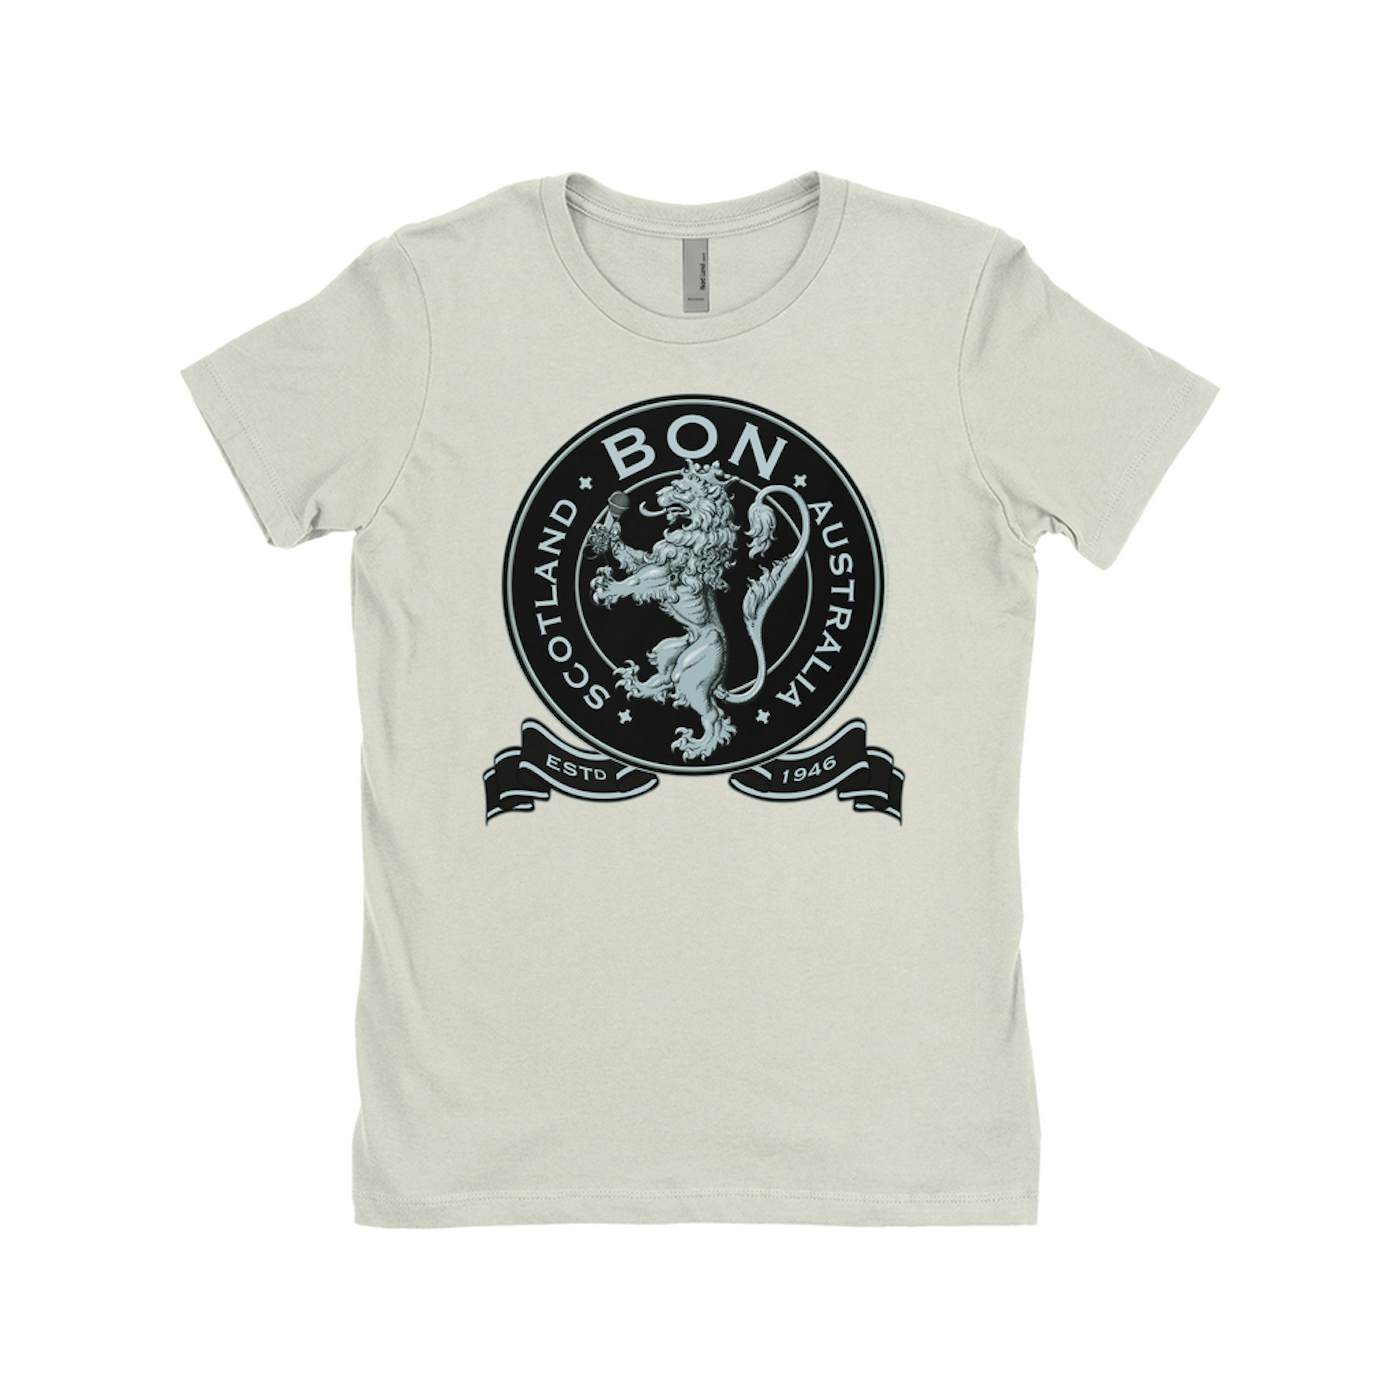 Bon Scott Ladies' Boyfriend T-Shirt | Bon Scotland Australia Est 1946 Bon Scott Shirt